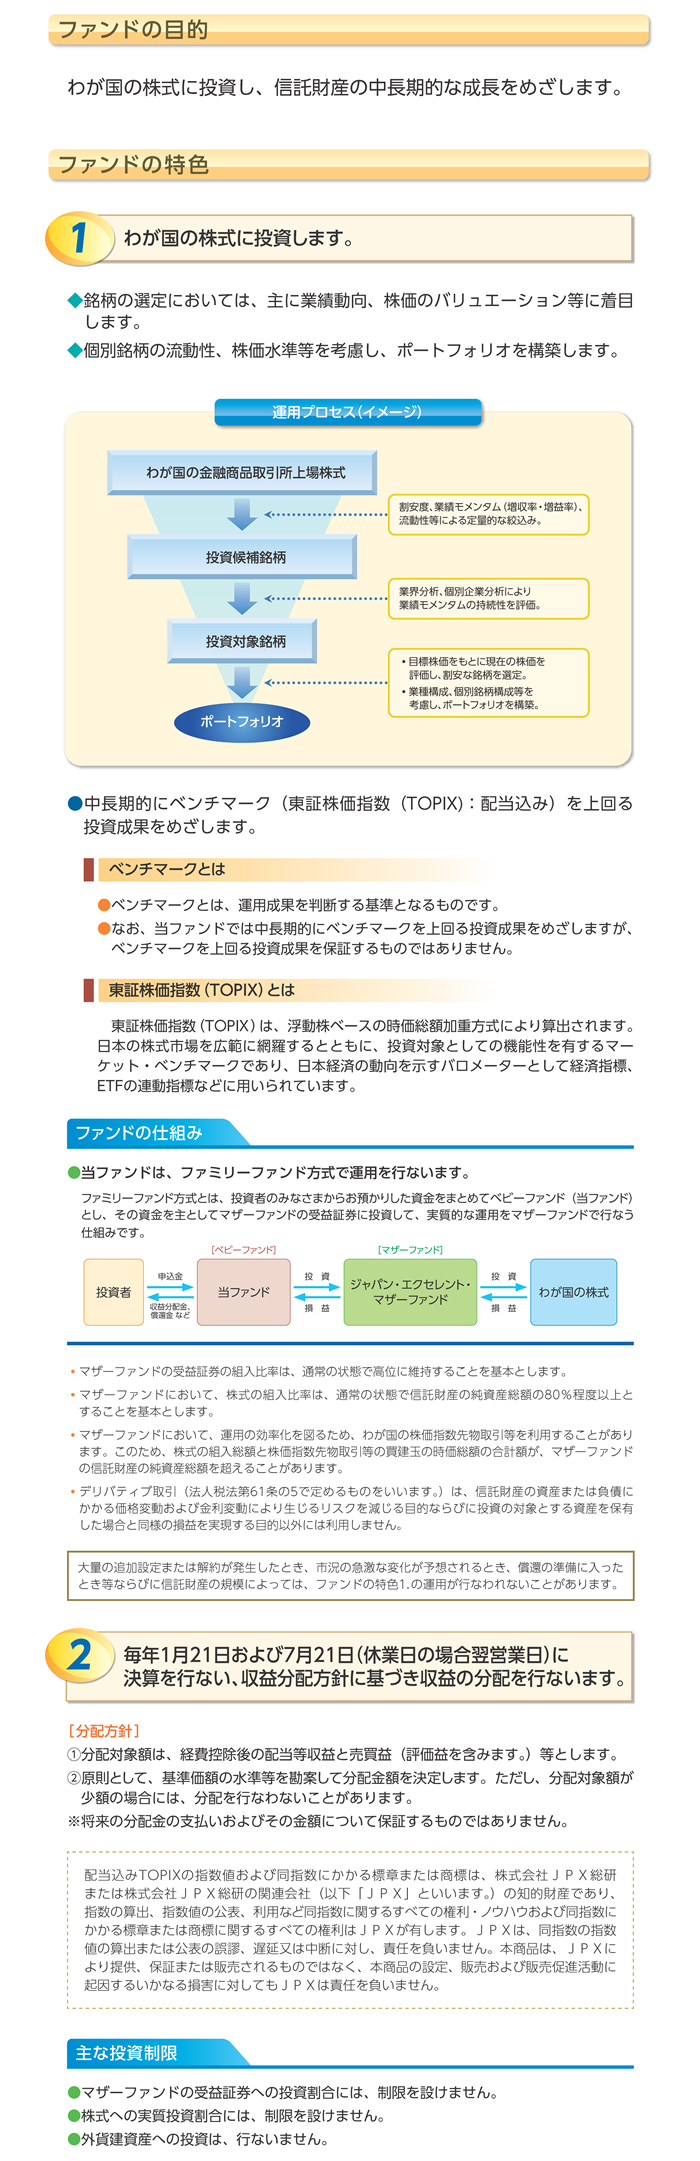 ジャパン・エクセレント追加型投信/国内/株式